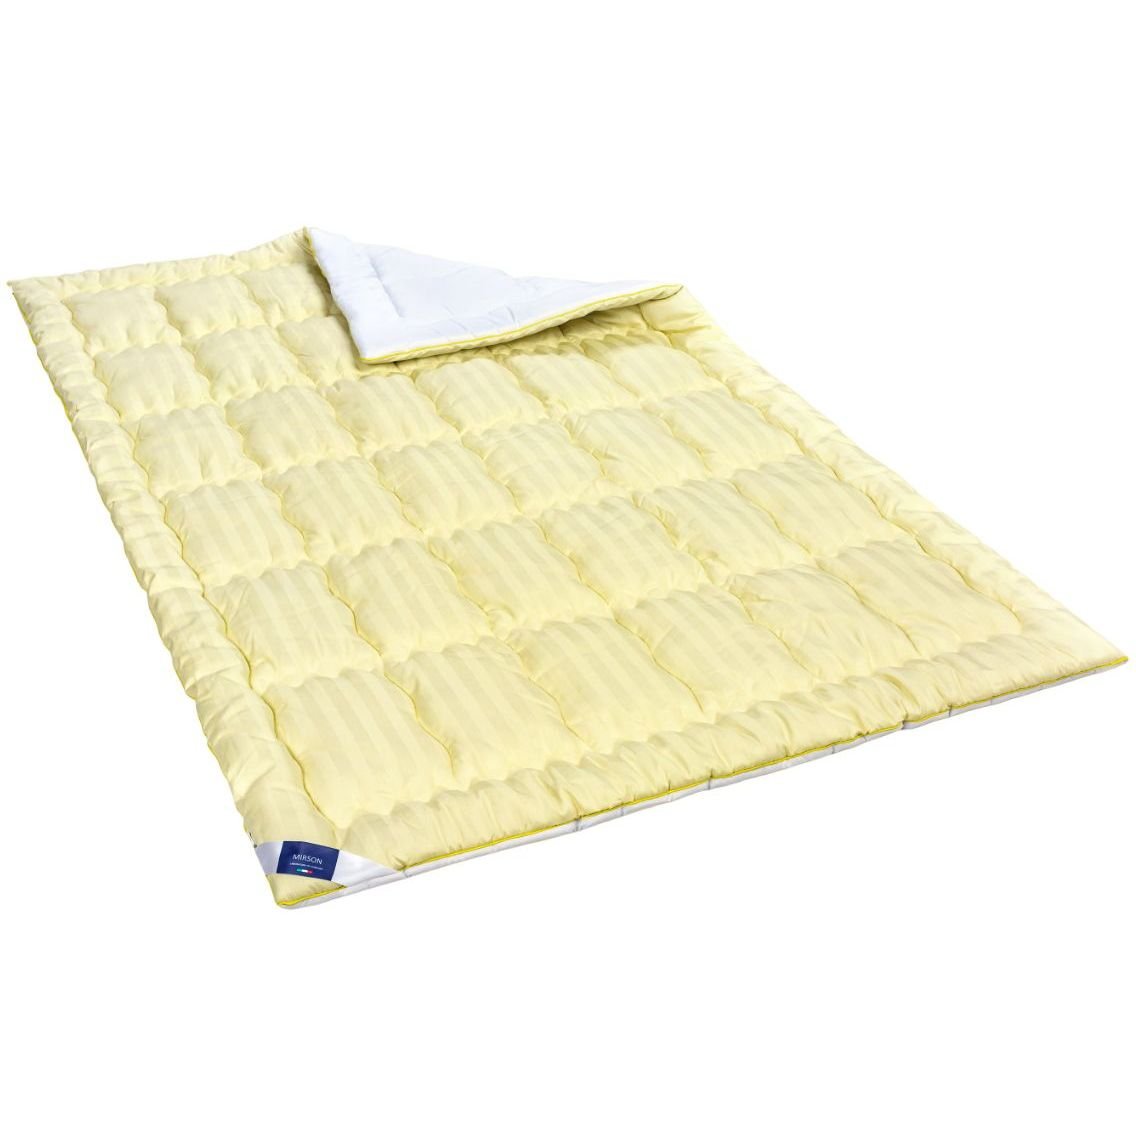 Одеяло антиаллергенное MirSon Carmela Hand Made EcoSilk №0555, зимнее, 155x215 см, желто-белое - фото 1